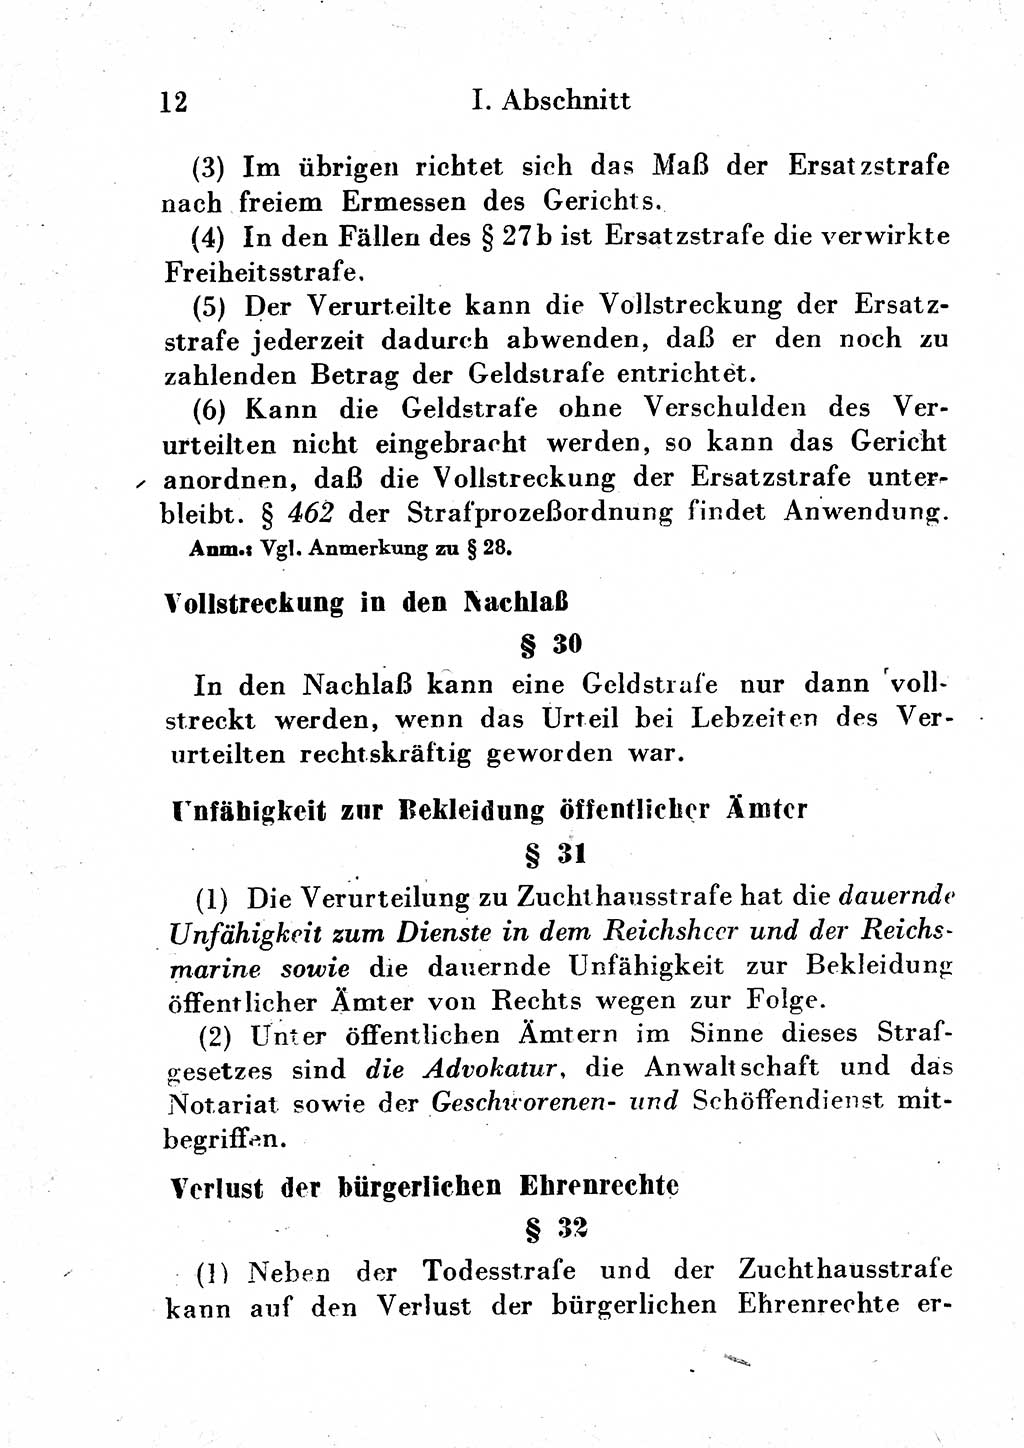 Strafgesetzbuch (StGB) und andere Strafgesetze [Deutsche Demokratische Republik (DDR)] 1954, Seite 12 (StGB Strafges. DDR 1954, S. 12)